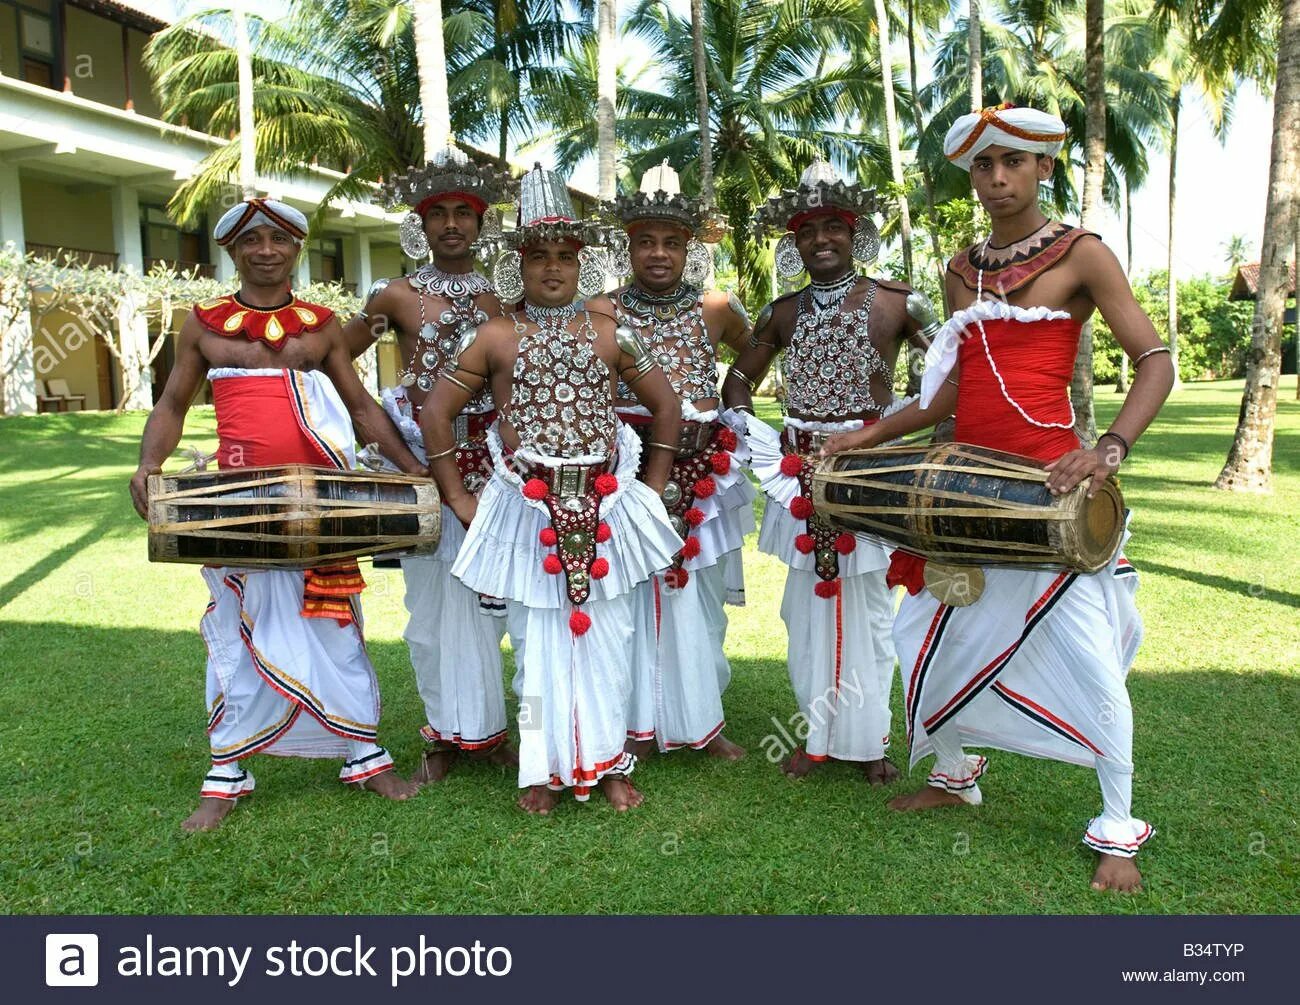 Что купить на шри ланке. Национальные танцы Шри-Ланки. Шри Ланка национальный танец. Шри Ланка Национальная одежда. Национальные костюмы Шри Ланки.